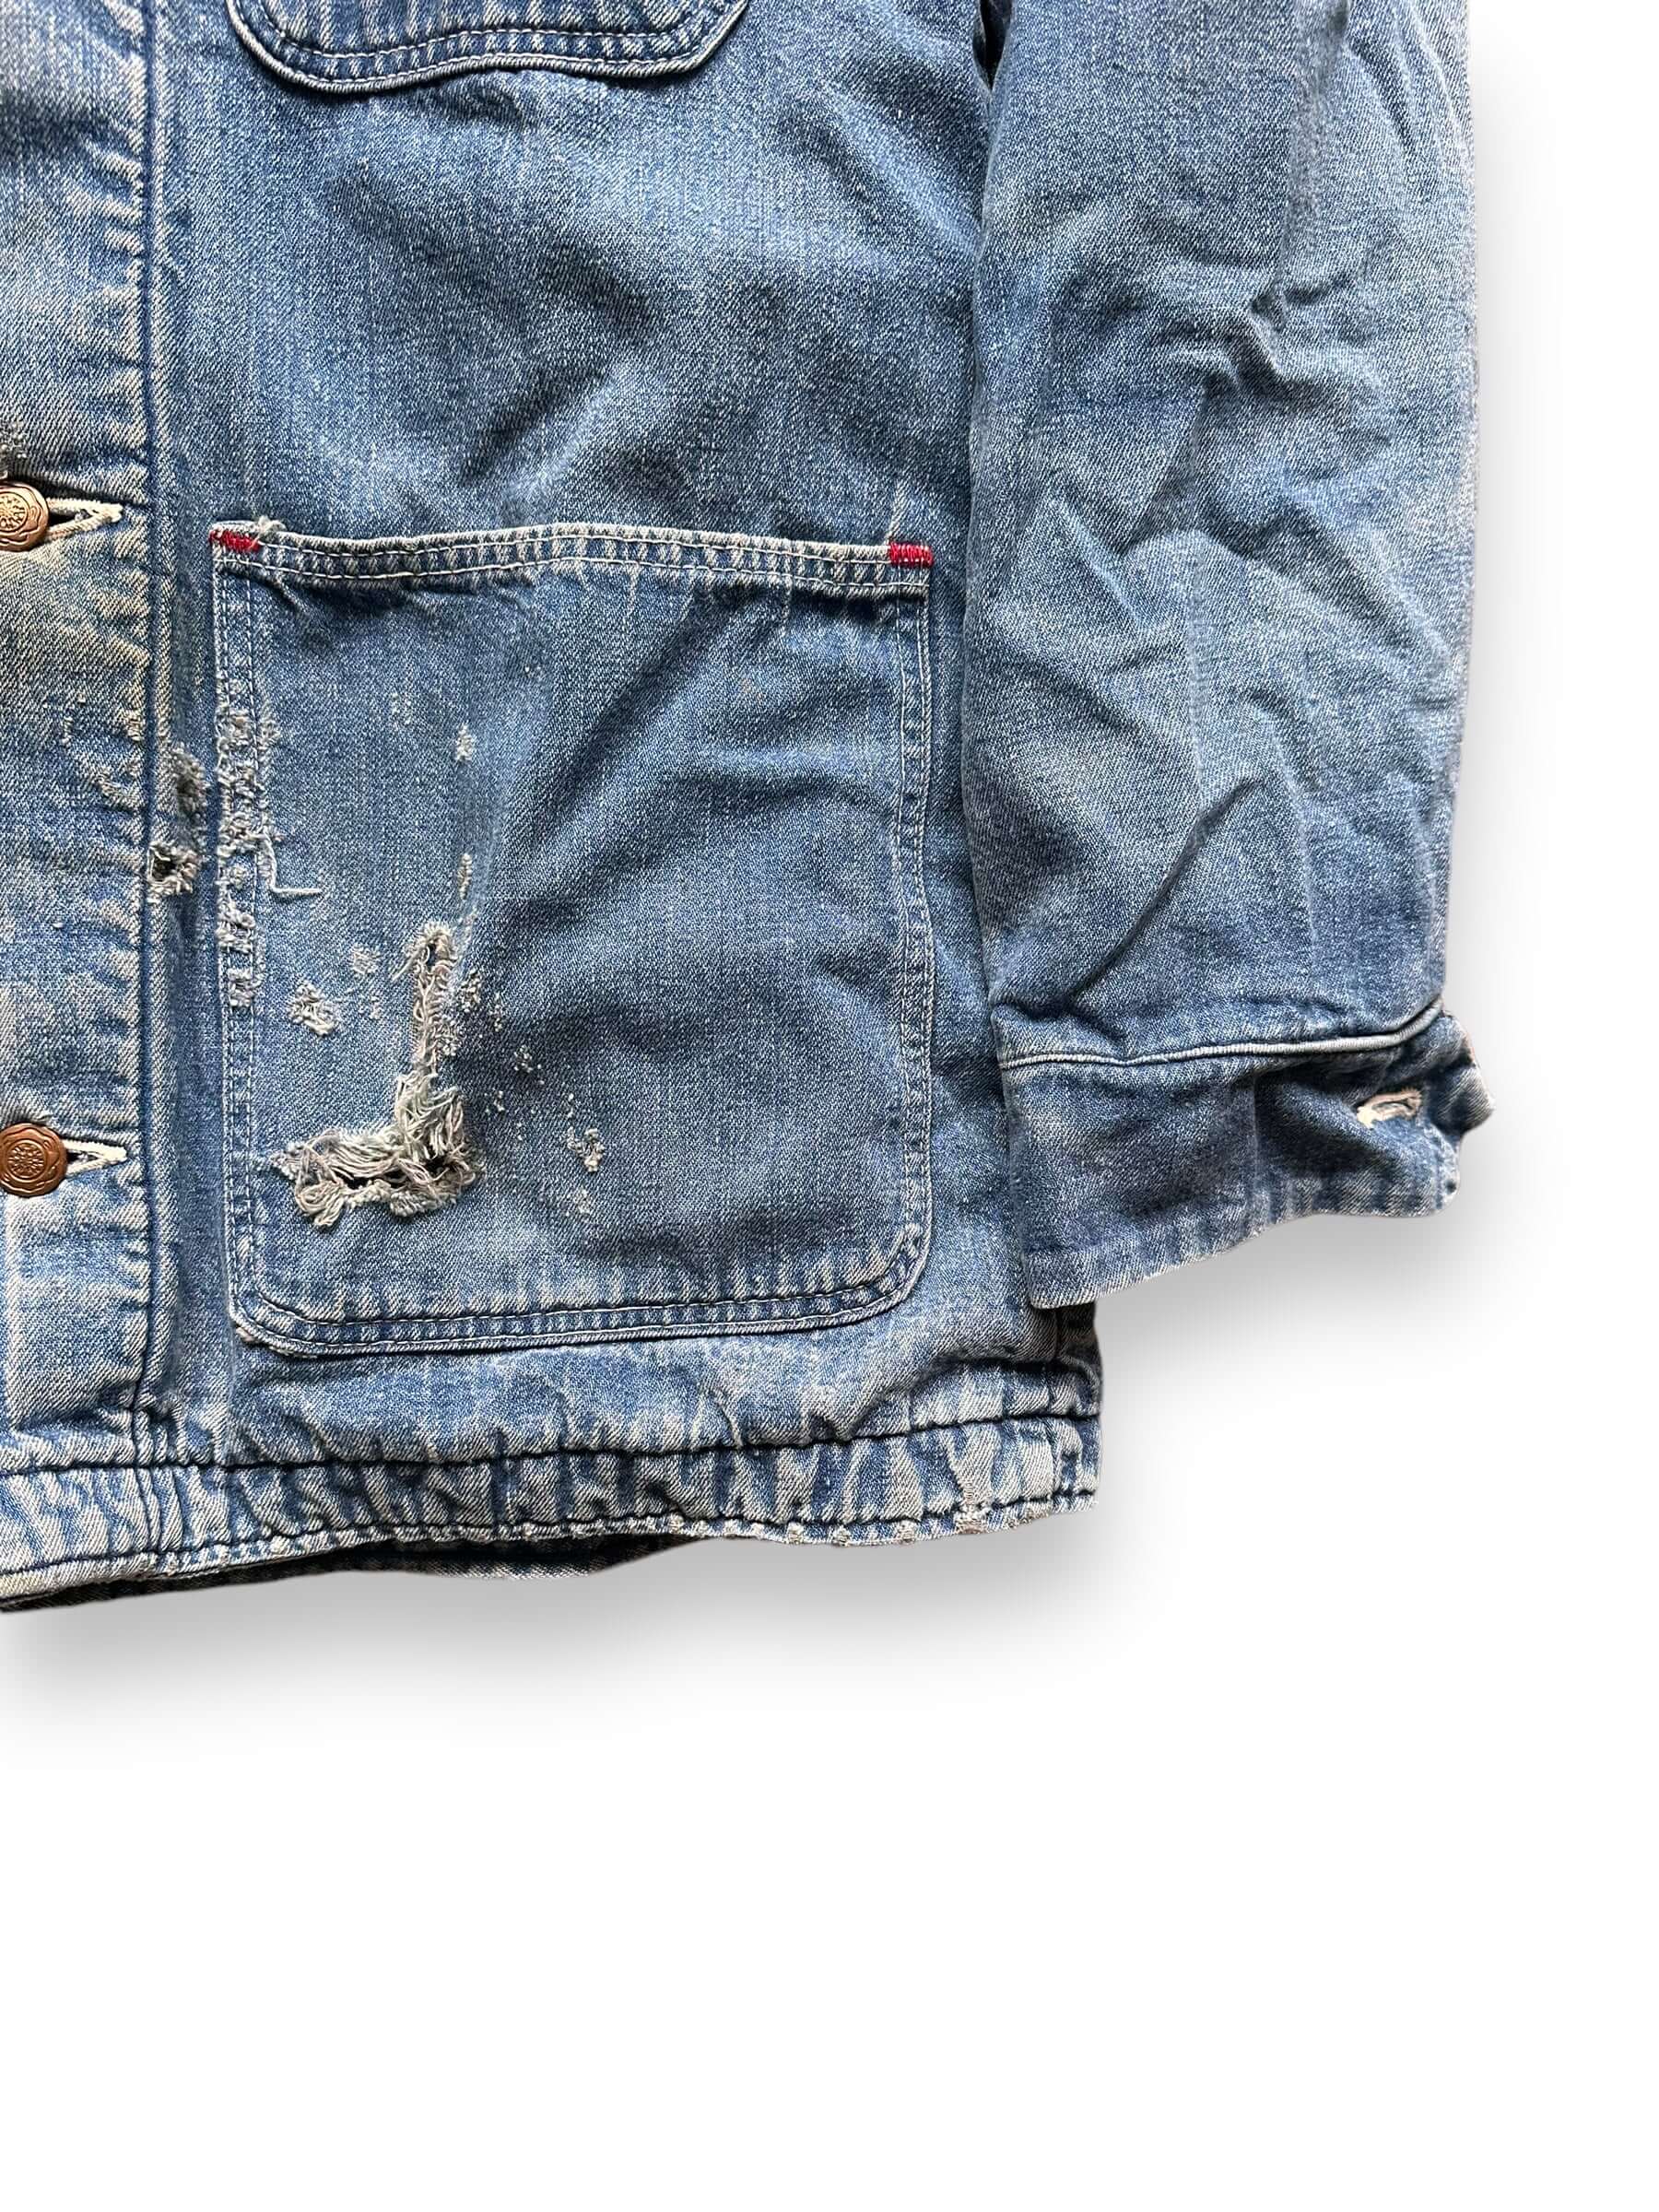 Lower Left Pocket Damage on Vintage Wrangler Blanket Lined Denim Chore Coat SZ 34 | Seattle Vintage Workwear | Barn Owl Vintage Seattle